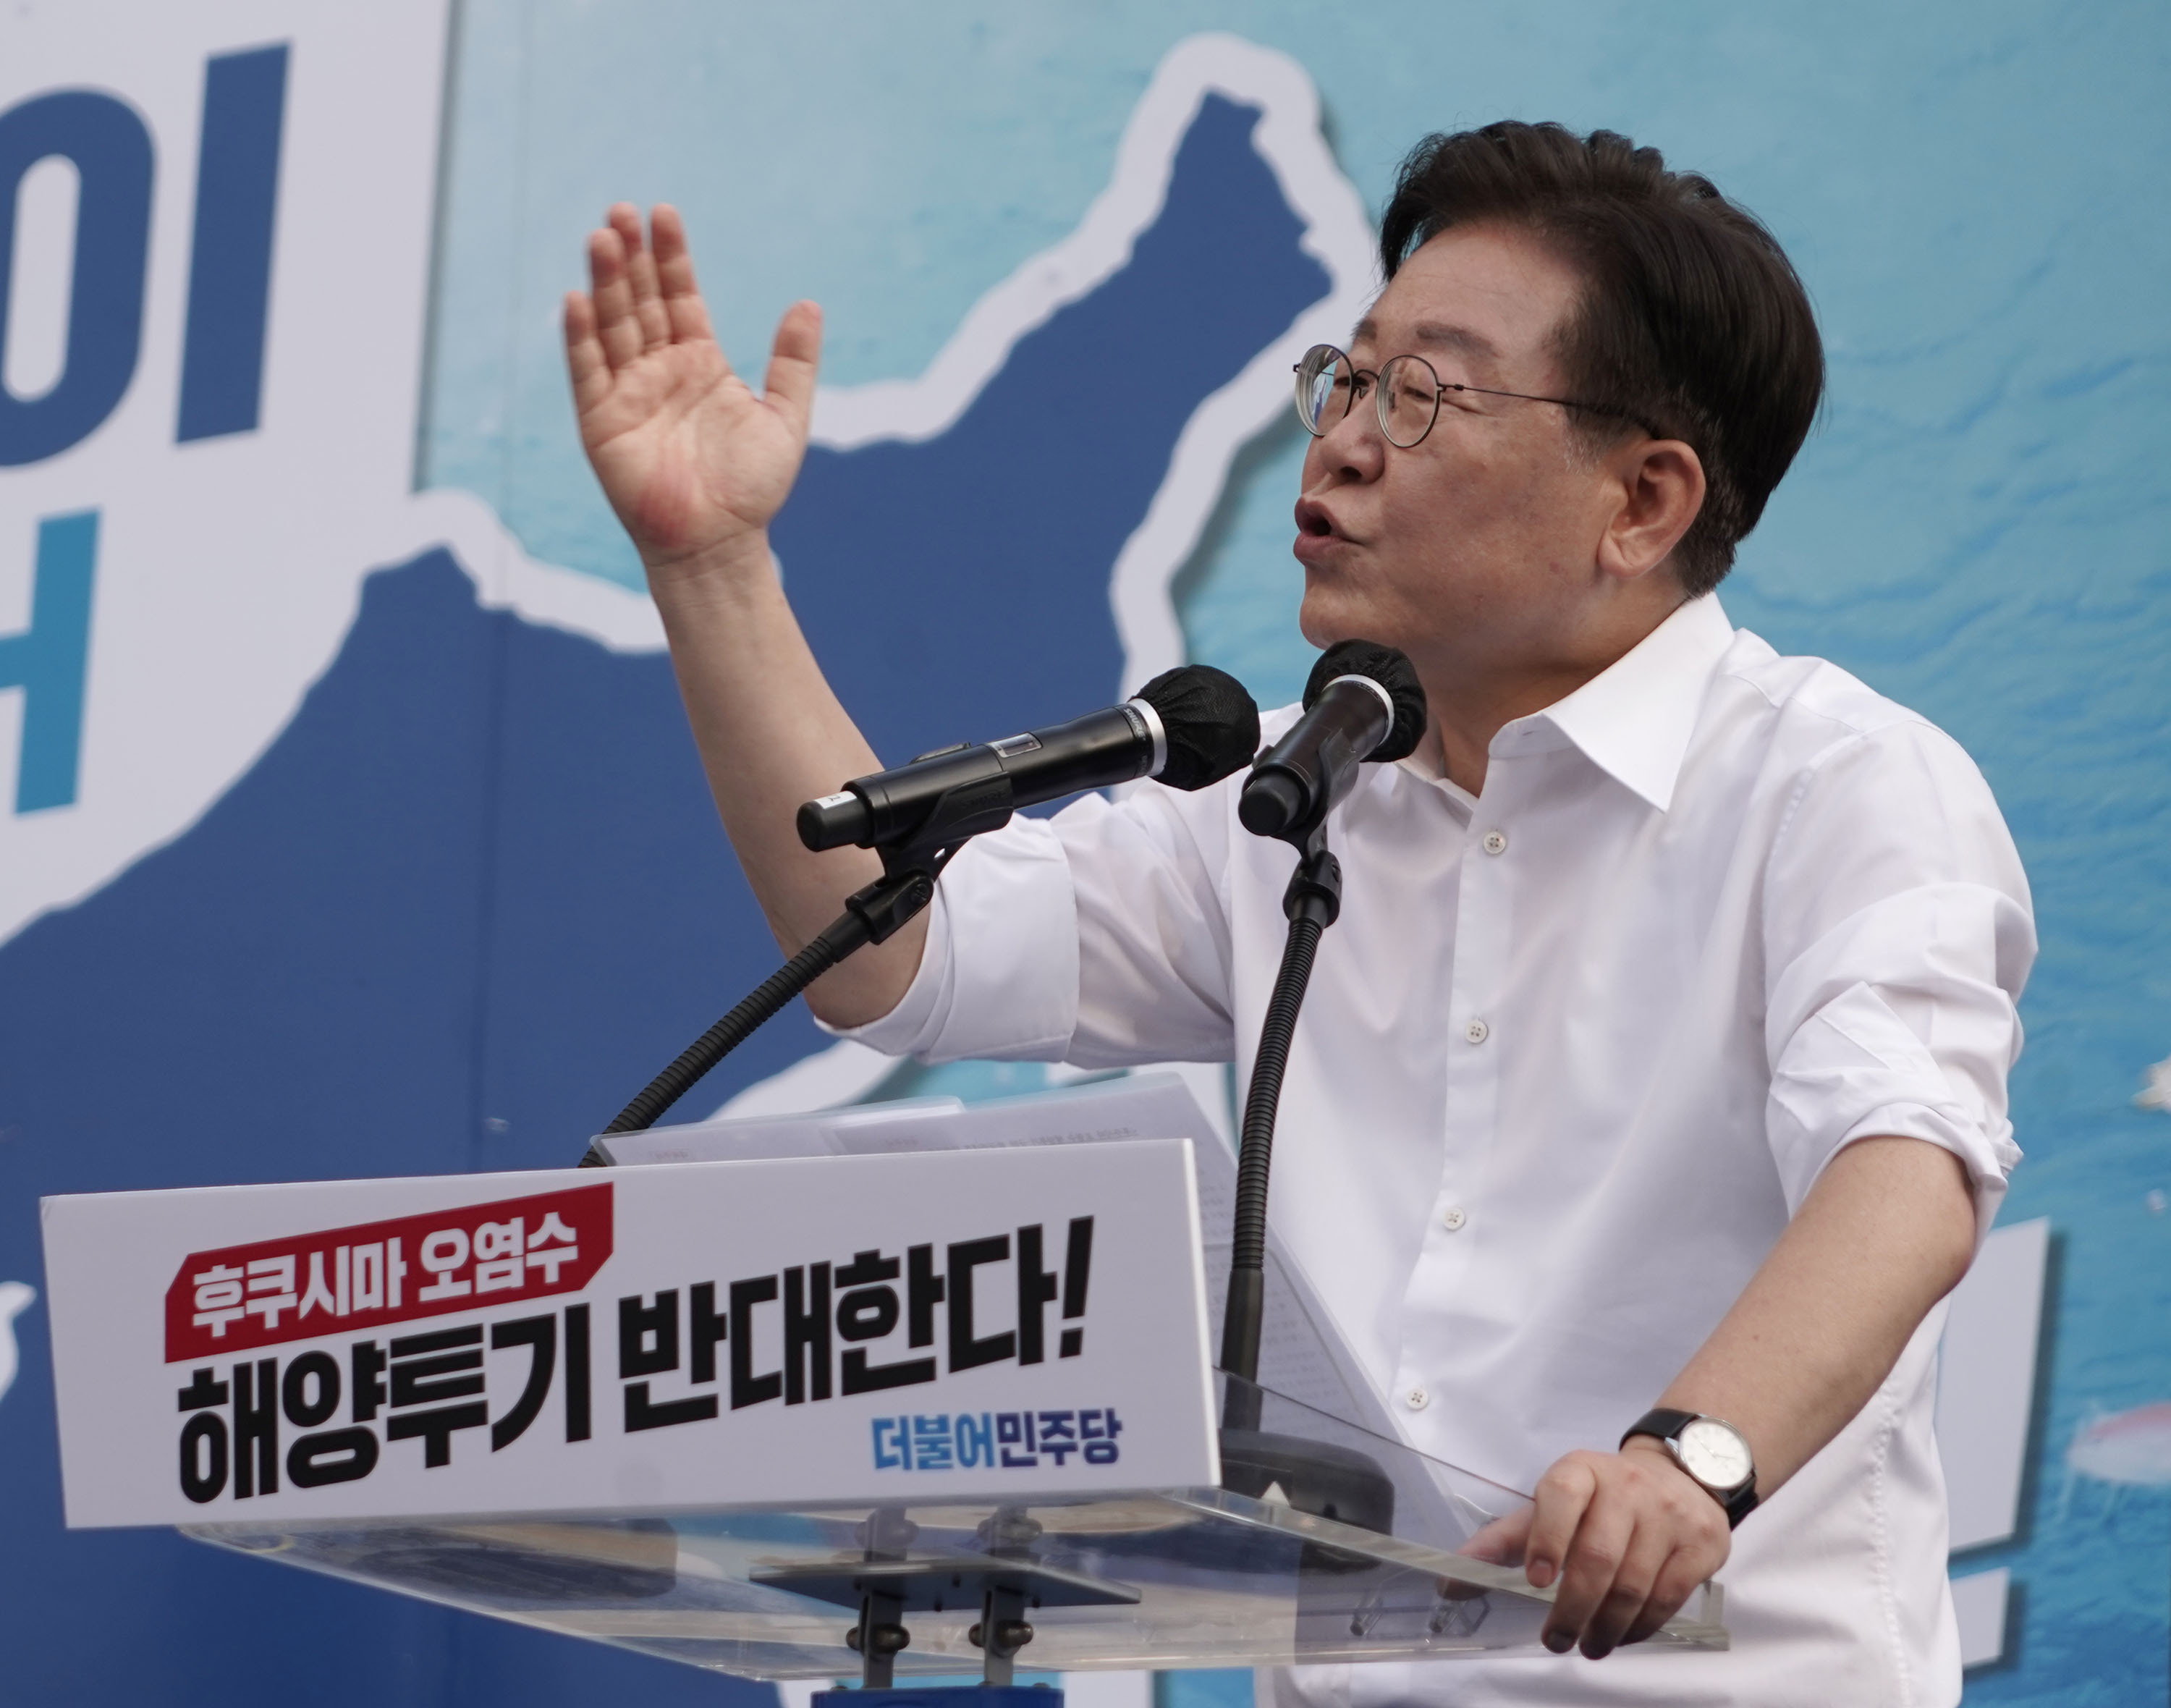 Apunyalat al coll el líder de l'oposició de Corea del Sud